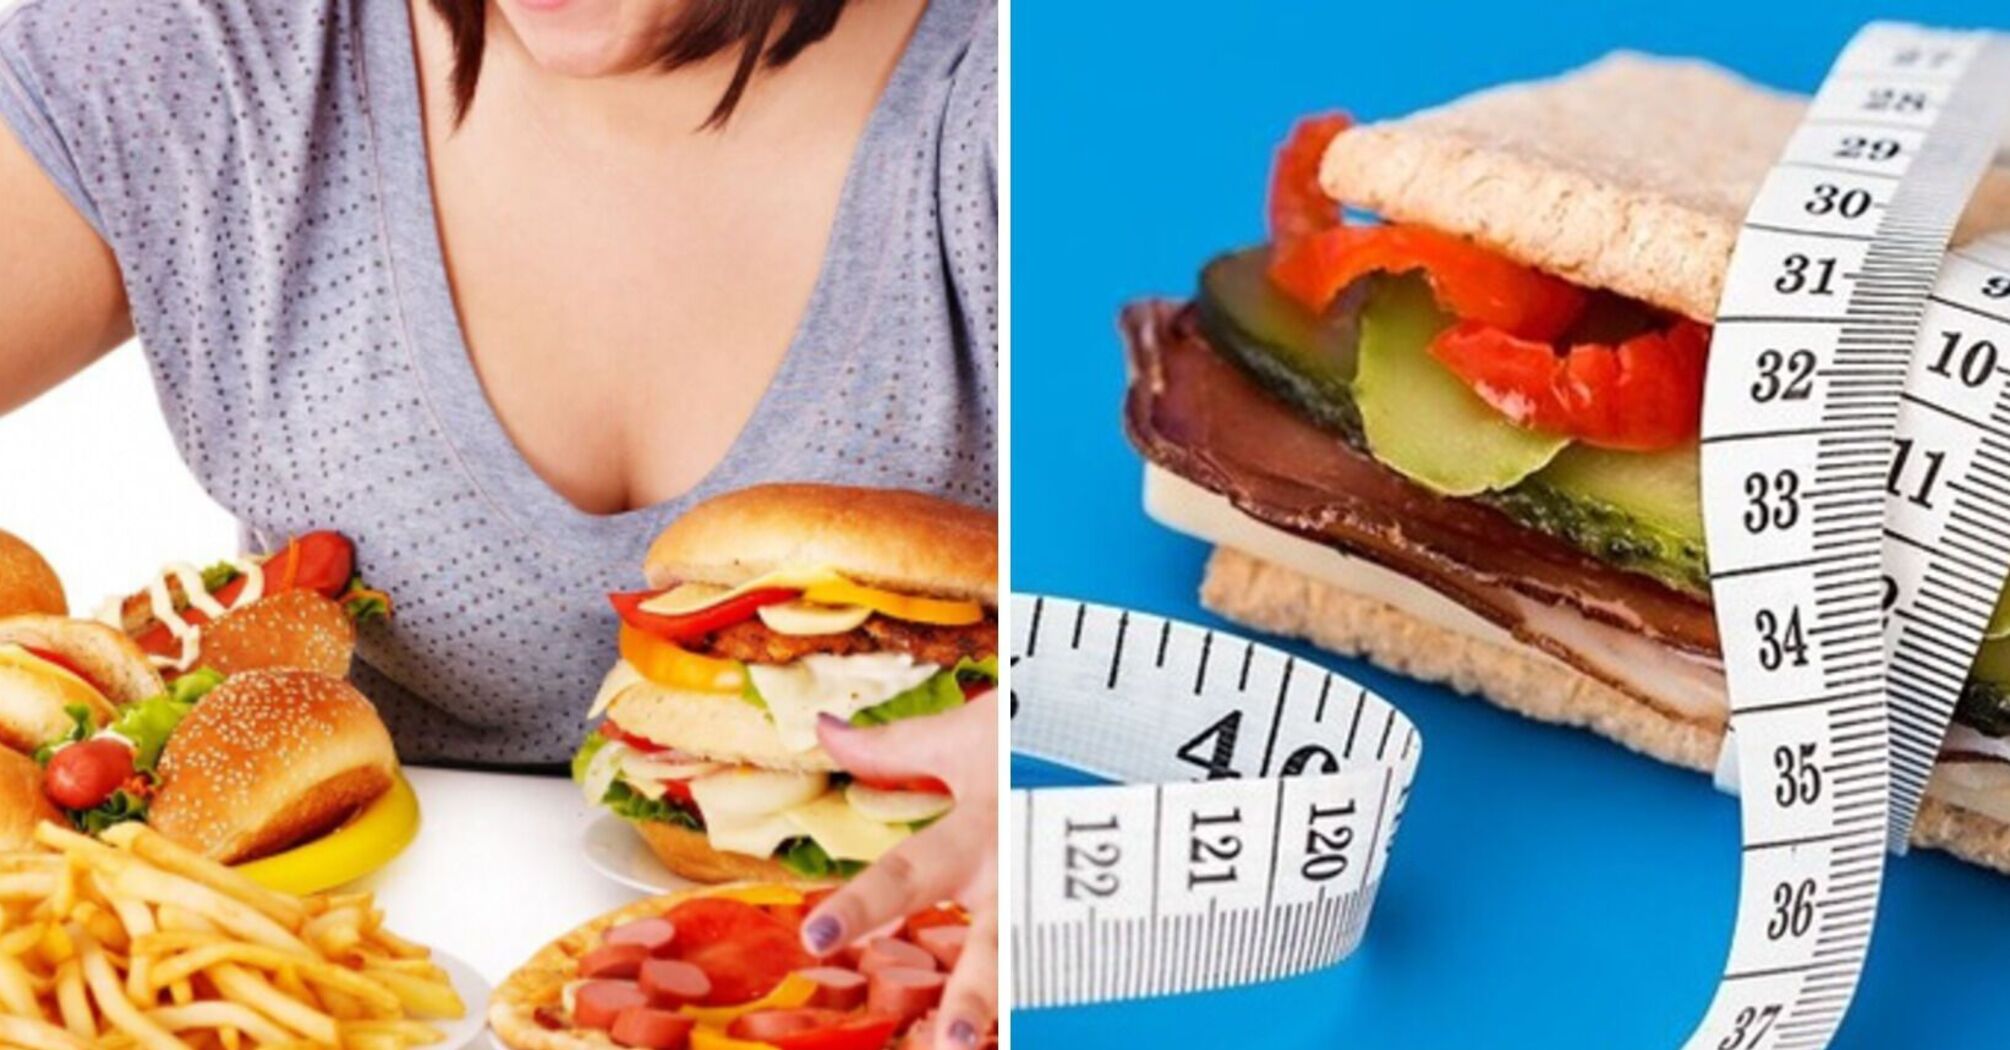 Чи є у вас порушення харчової поведінки: тест